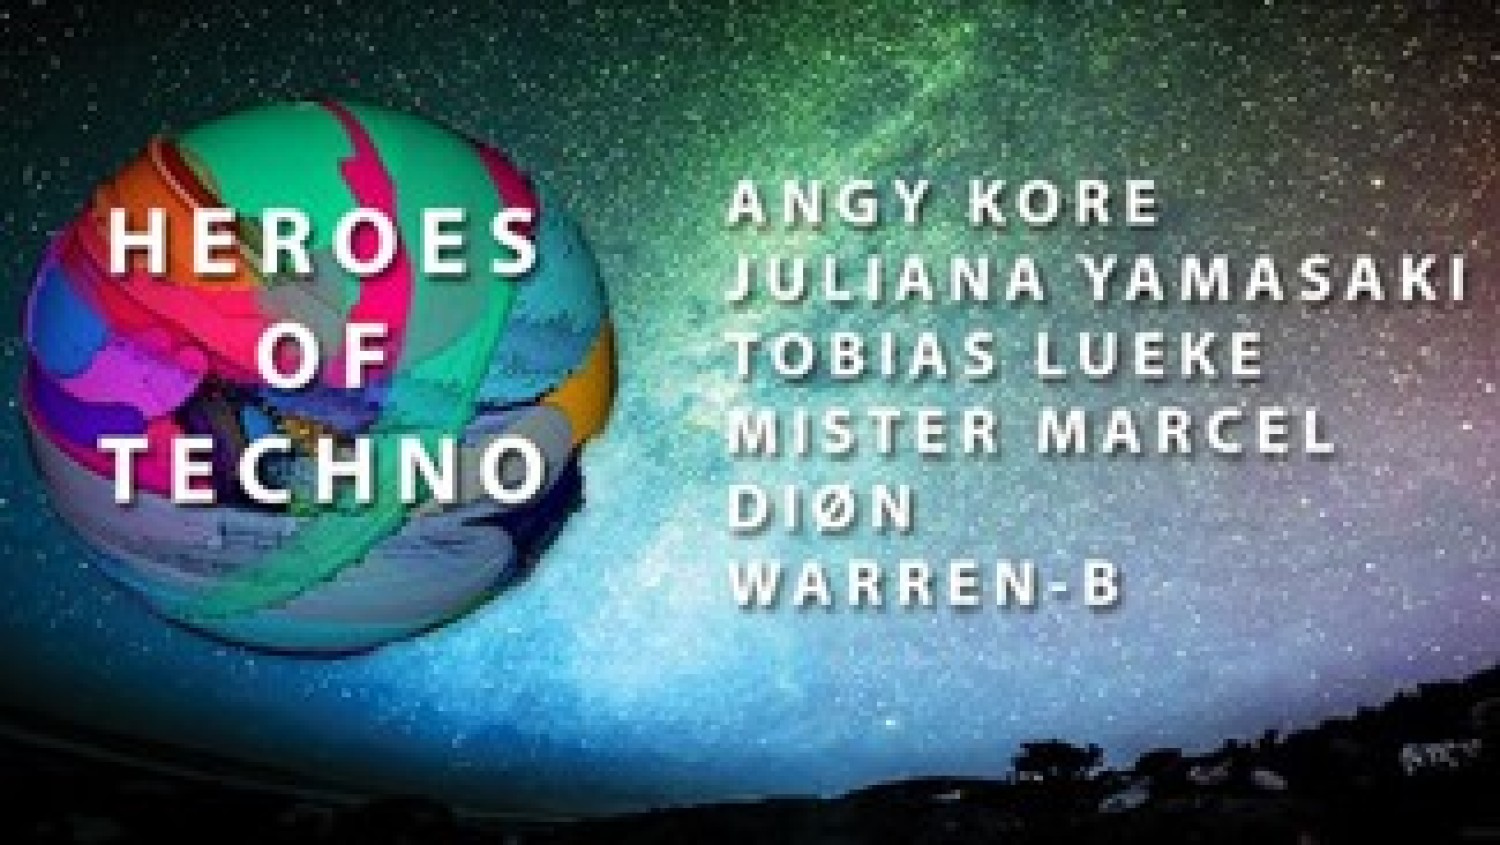 Party nieuws: Heroes of Techno keert terug op zaterdag 7 maart!